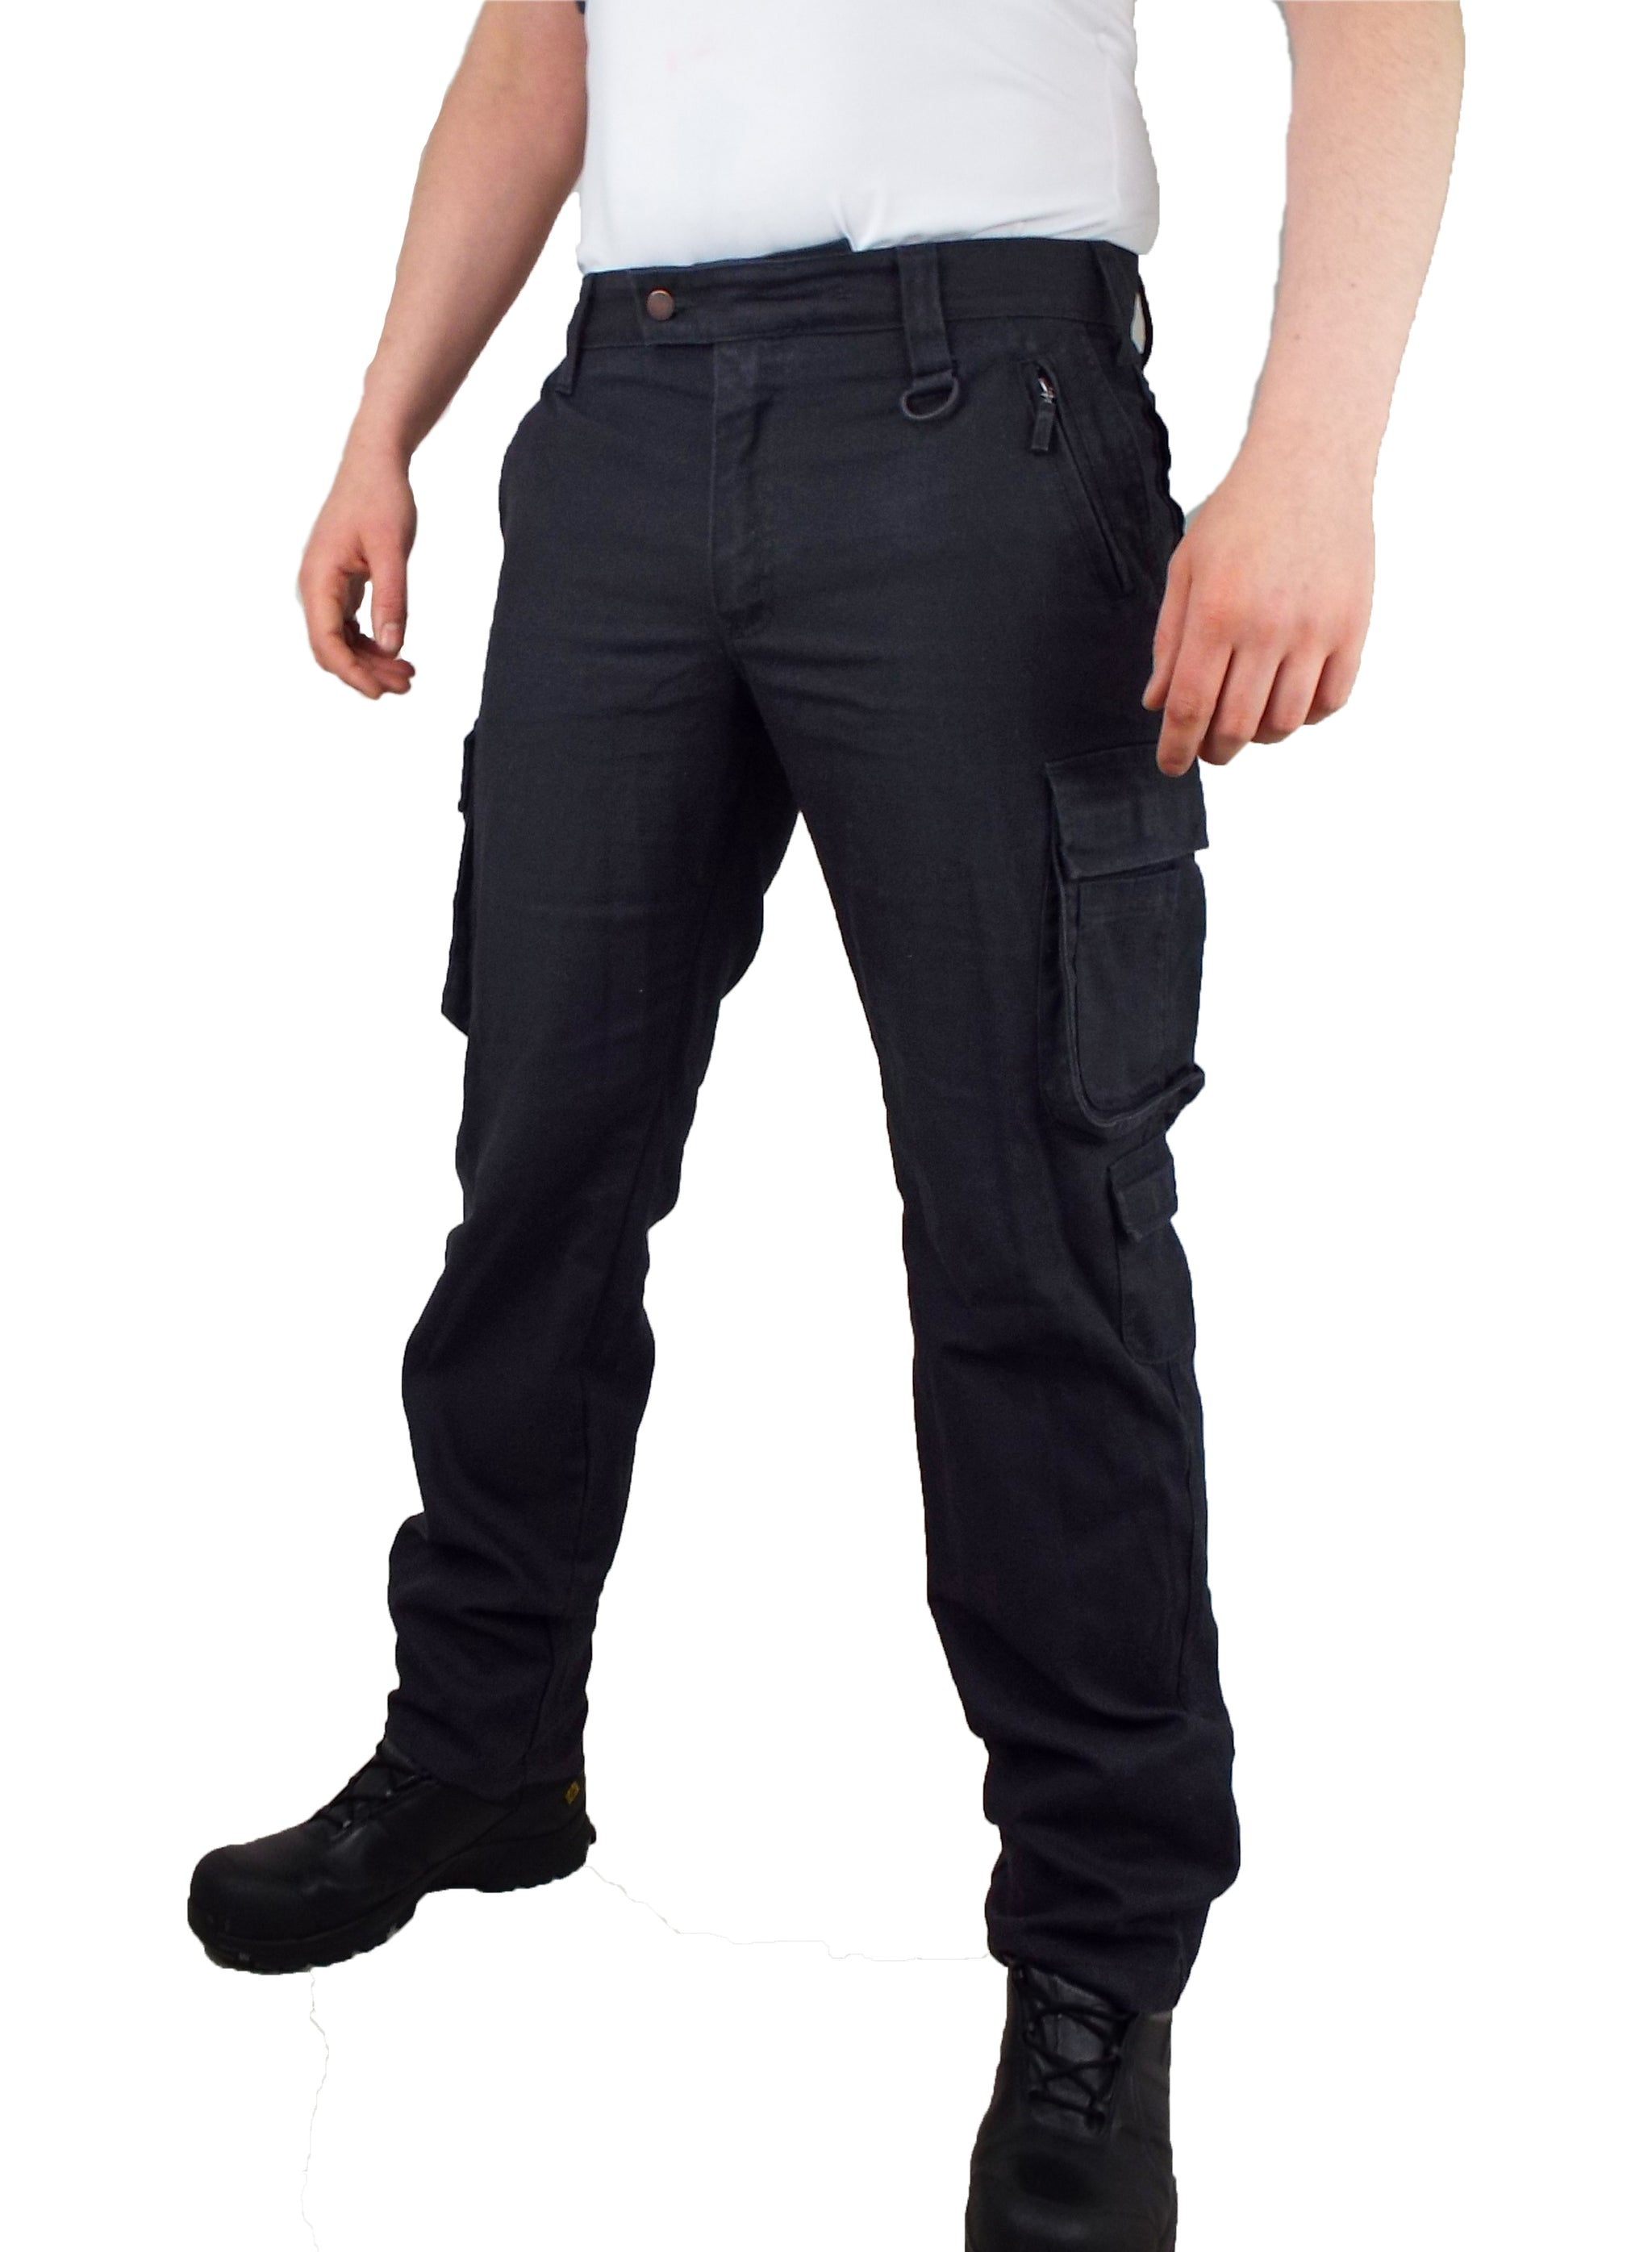 engelbert strauss Trousers esactive Pants German Workwear  eBay